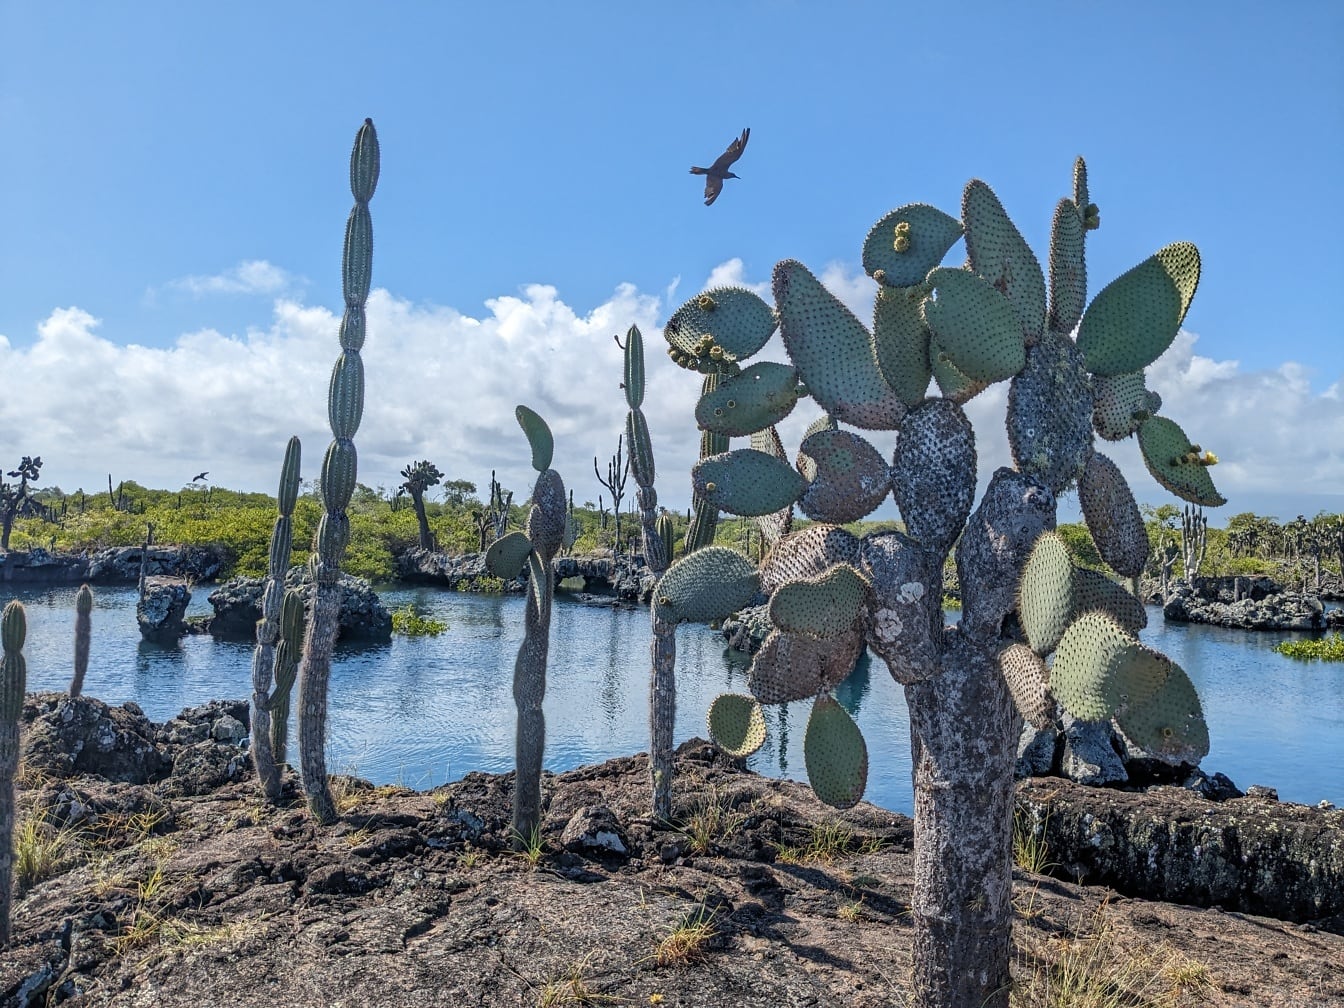 Parul prickly (Opuntia galapageia) o specie subtropicală de cactus endemică în Galapagos